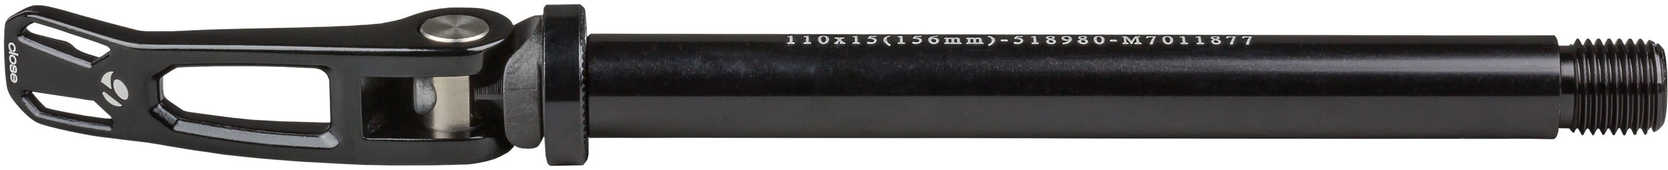 Stickaxel Bontrager Abp Convert Maxle Boost 15 x 110 mm fram